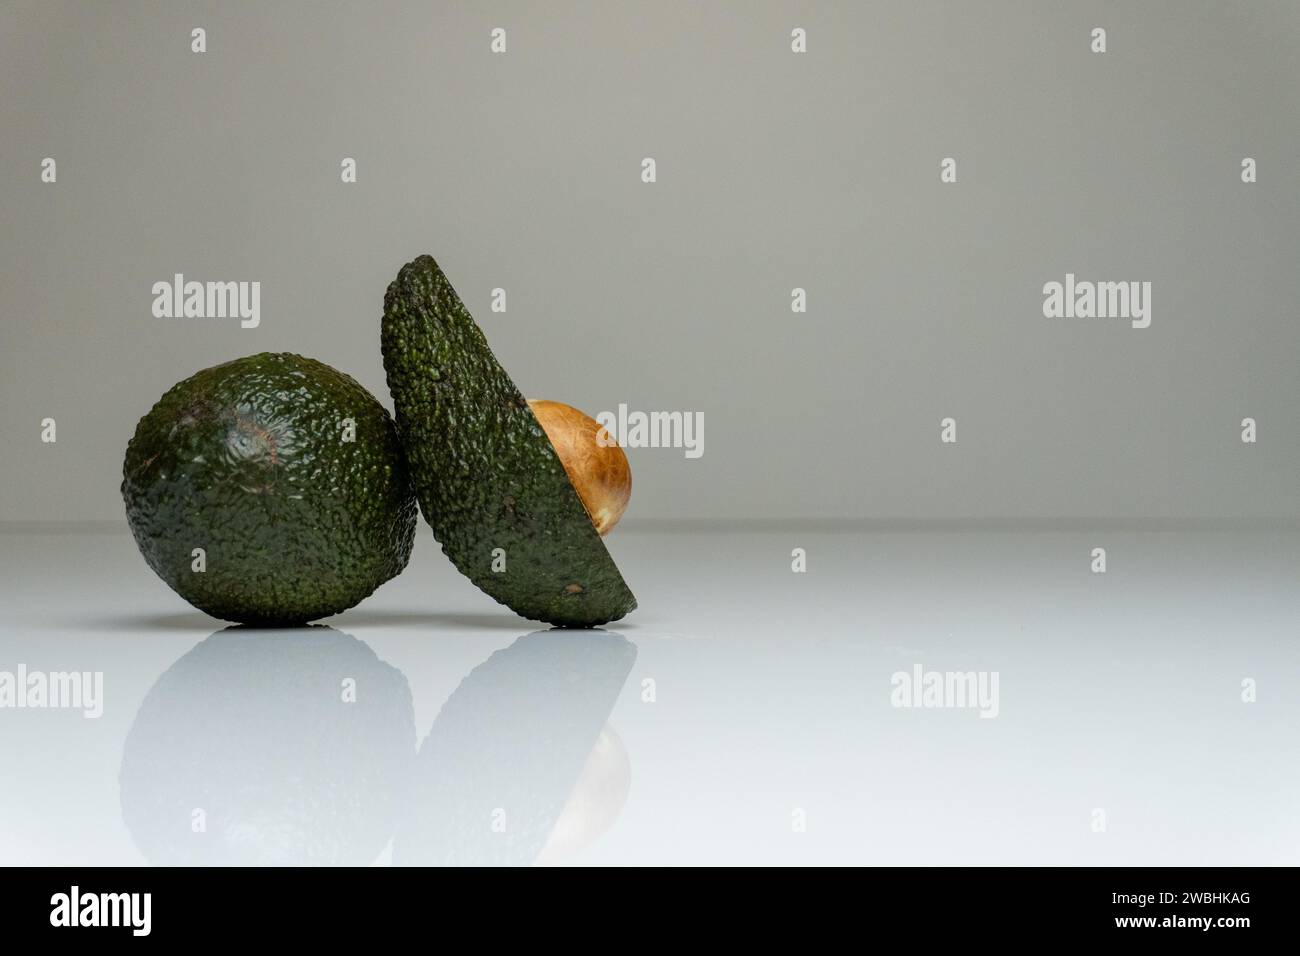 Foto accattivante con un avocado fresco collocato su un tavolo bianco in un ambiente minimalista, evidenziando il suo gusto vivace e sano Foto Stock